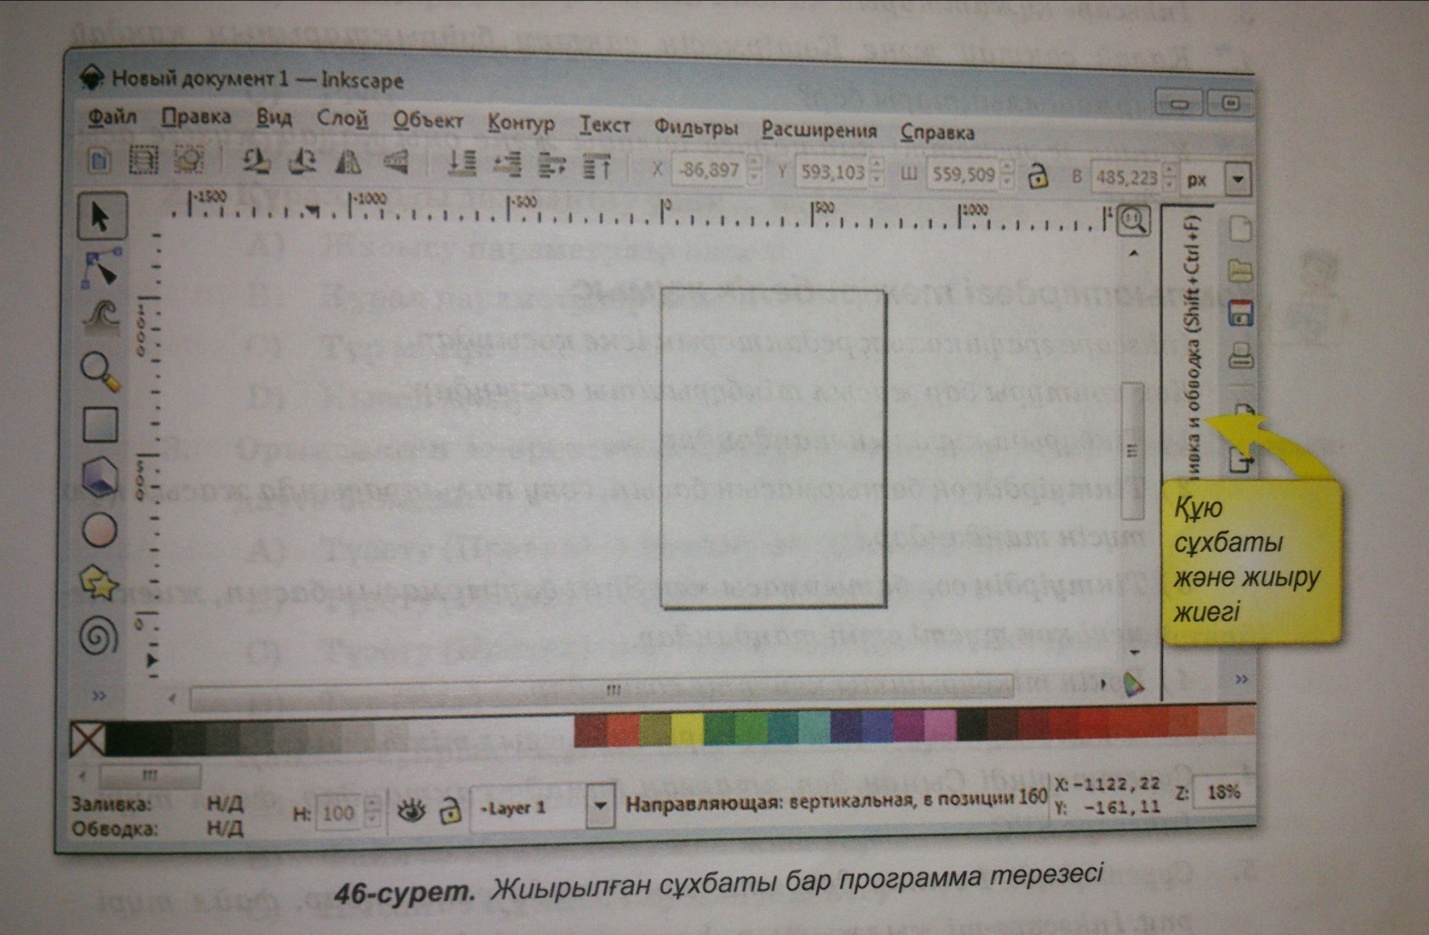 Сабақтың тақырыбы: Inkscape векторлық графикасының редакторы